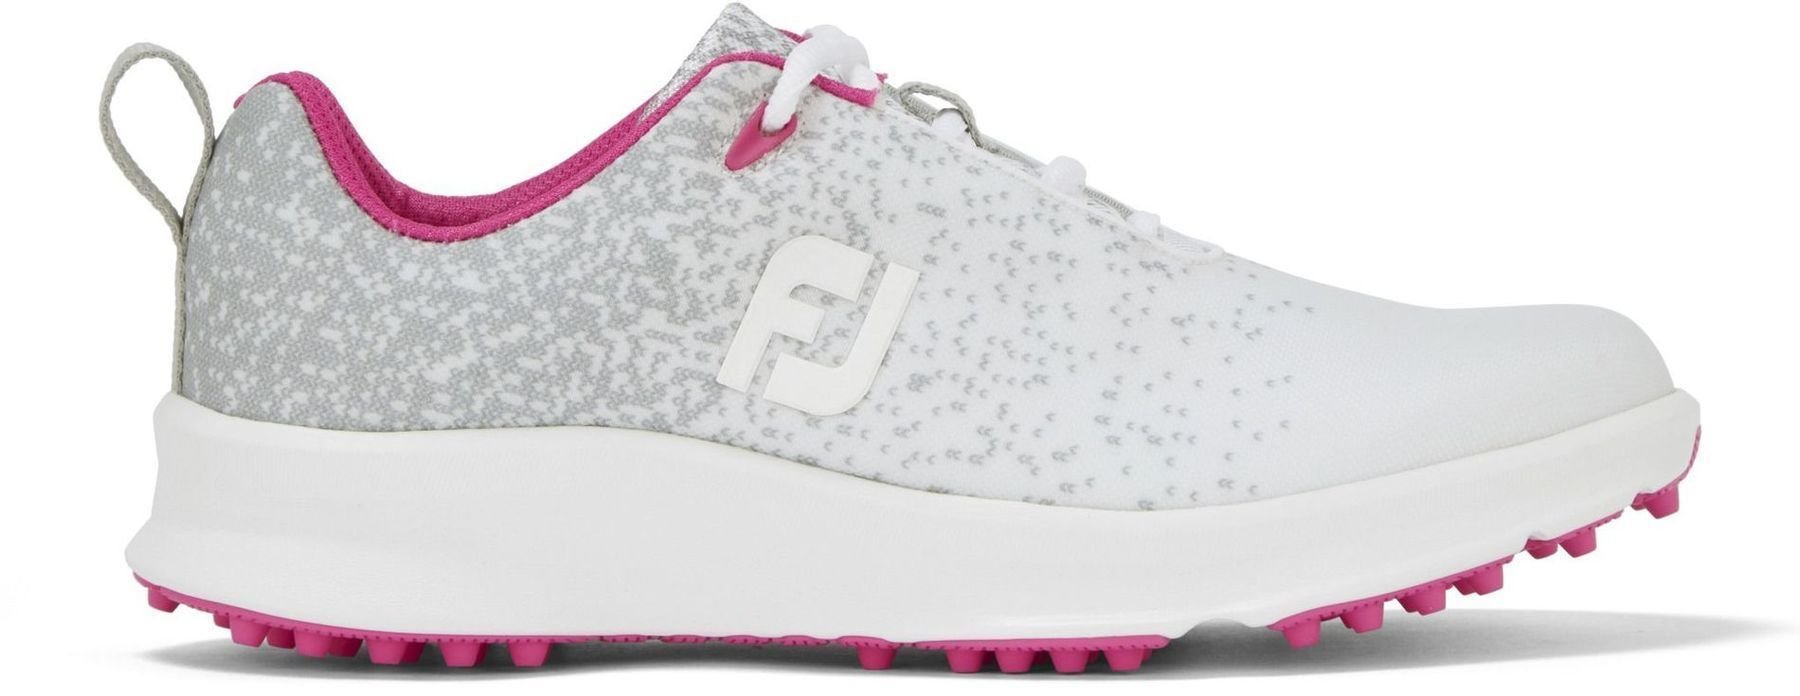 Golfsko til kvinder Footjoy Leisure Silver/White/Fuchsia 39